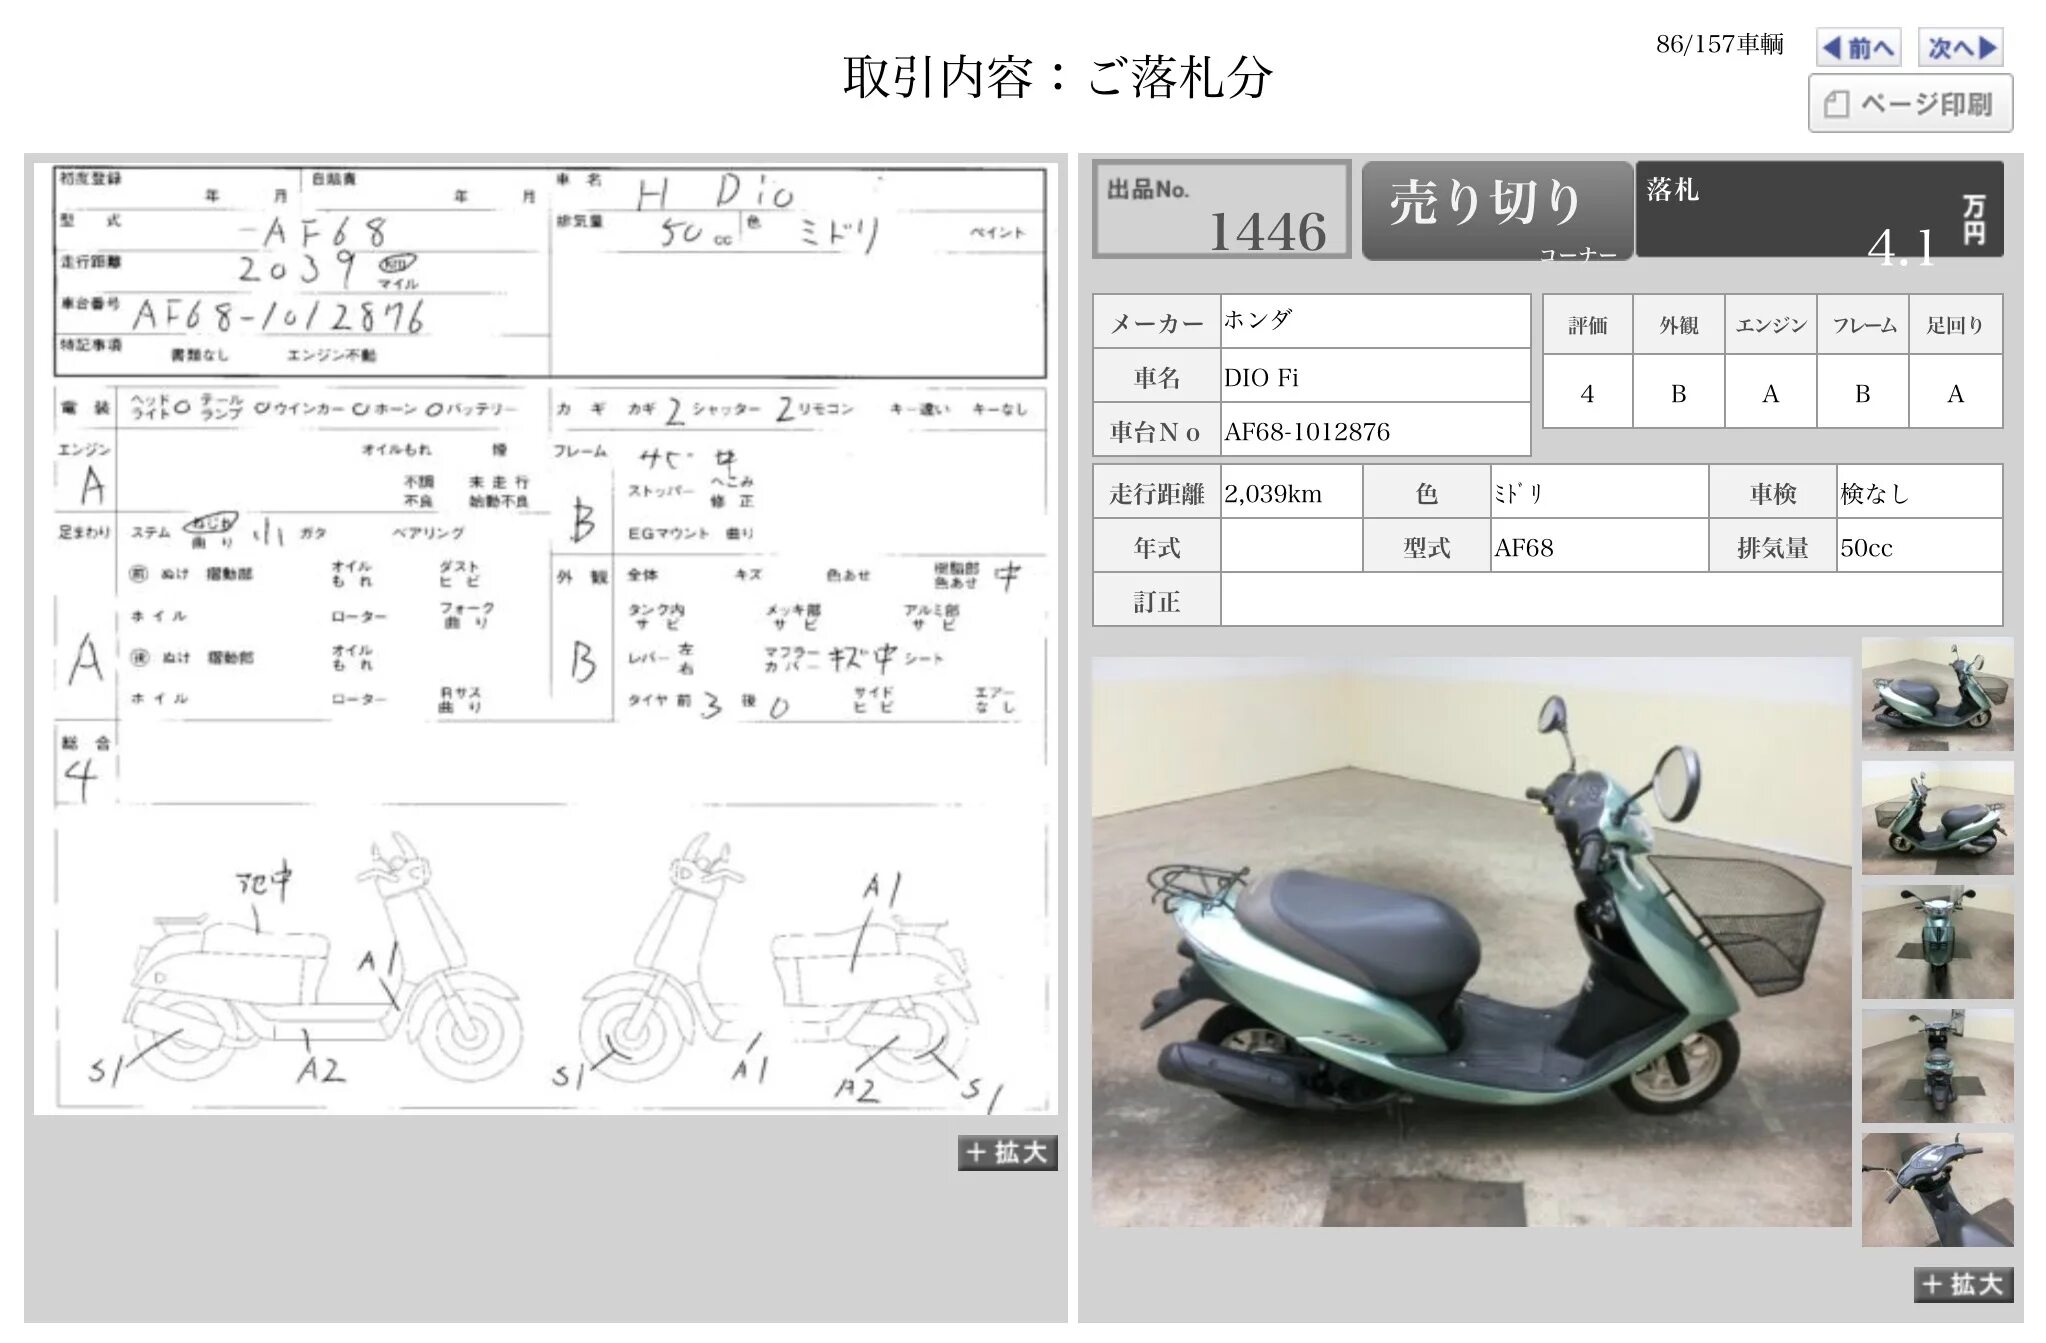 Honda dio размеры. Технические характеристики Honda Dio af 27. Honda Dio af68 manual. Размеры скутера Honda Dio 27. Ширина скутера Honda Dio.